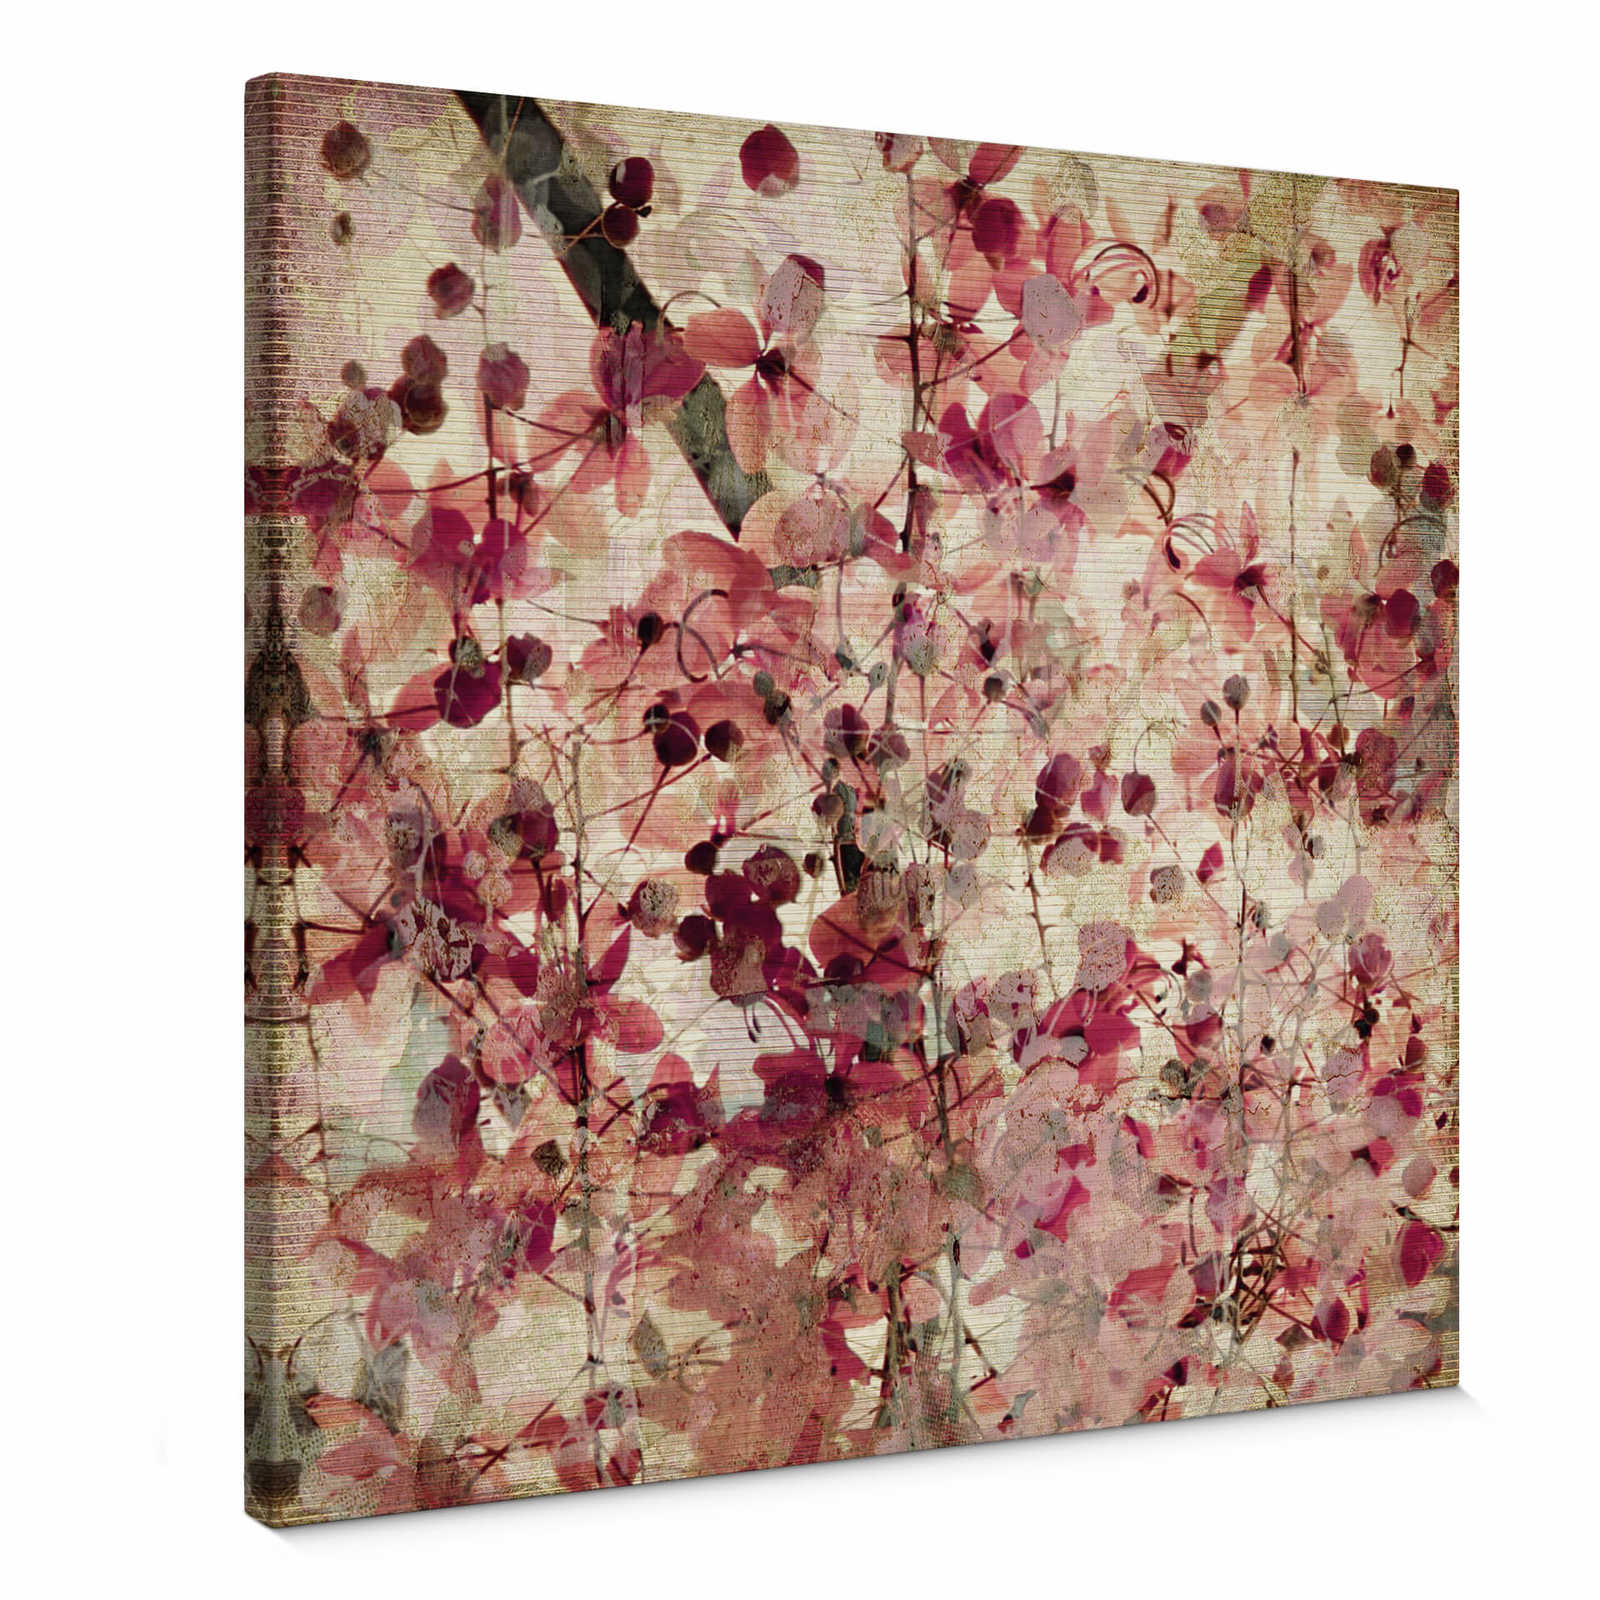 Vintage vierkant canvas schilderij met bloemenpatroon - 0,50 m x 0,50 m
